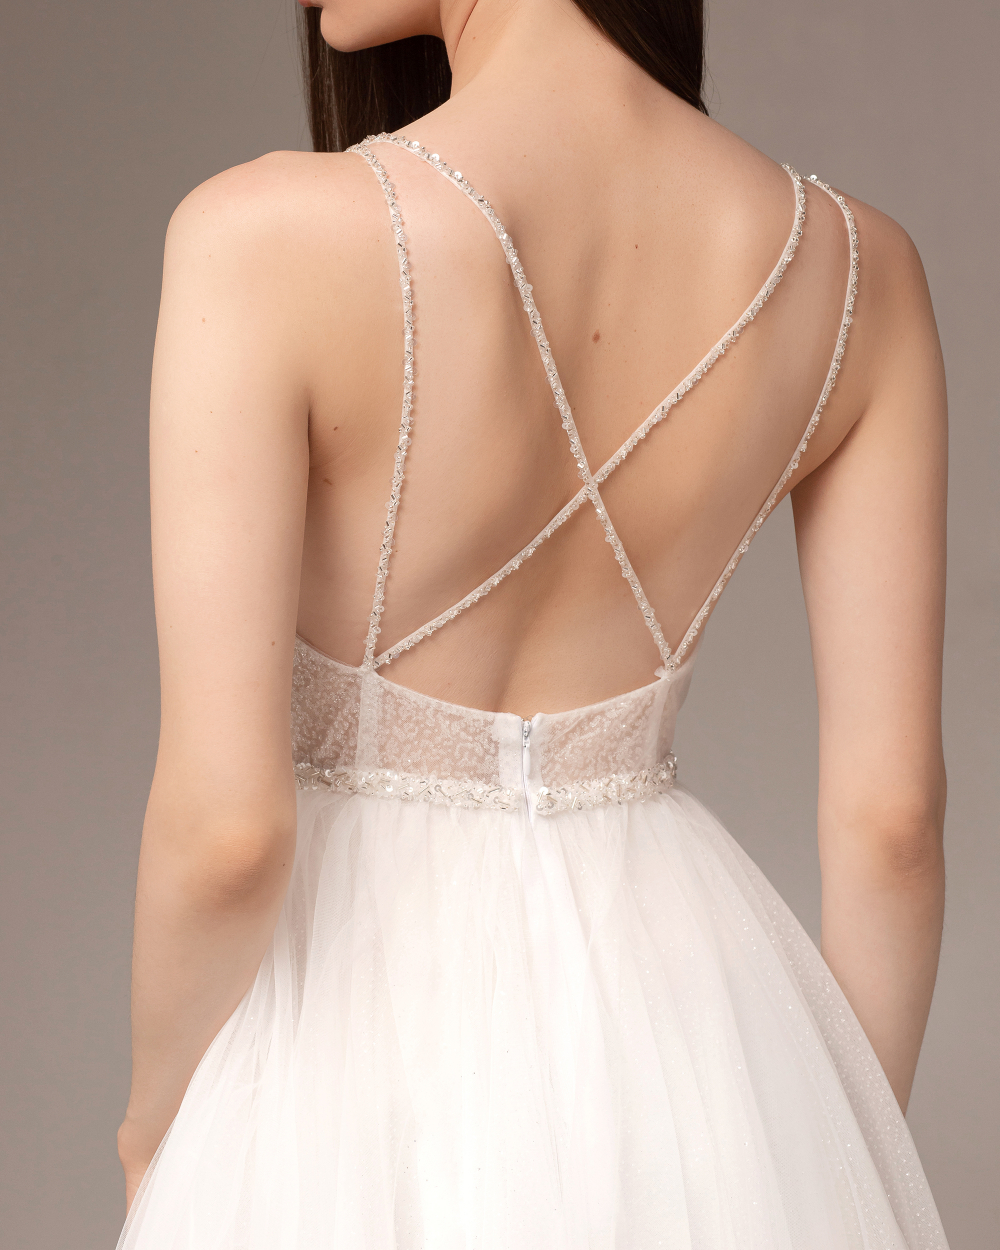 Свадебное платье с открытой спиной на тонких бретелях "Бланш"